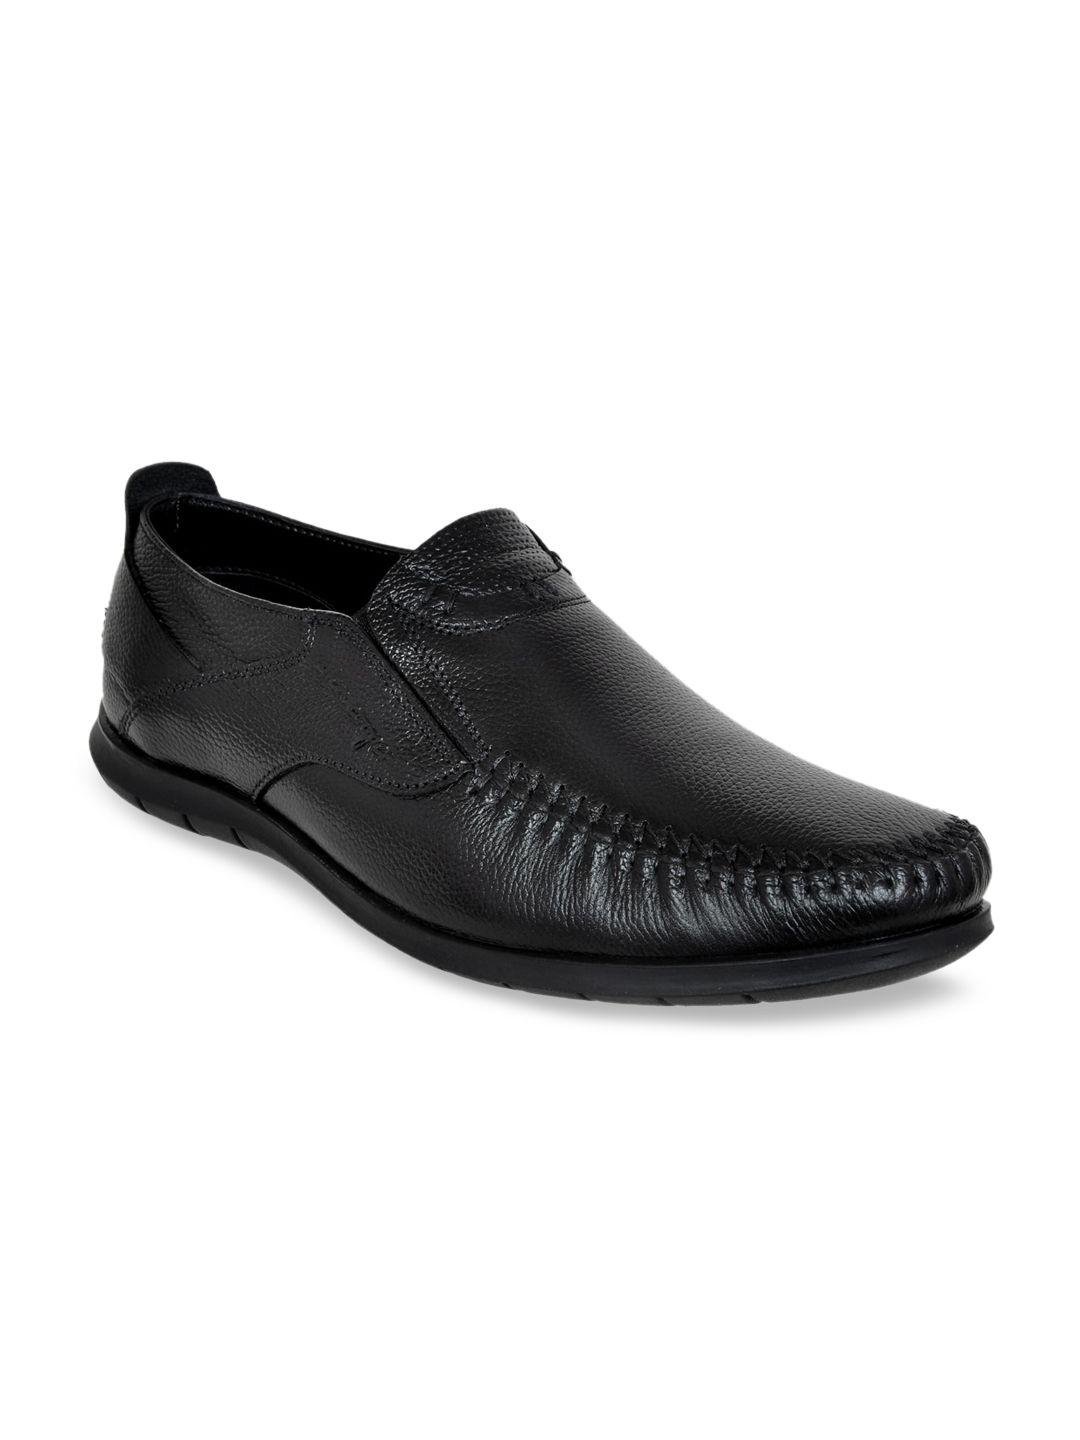 allen-cooper-men-black-textured-leather-slip-on-formal-shoes